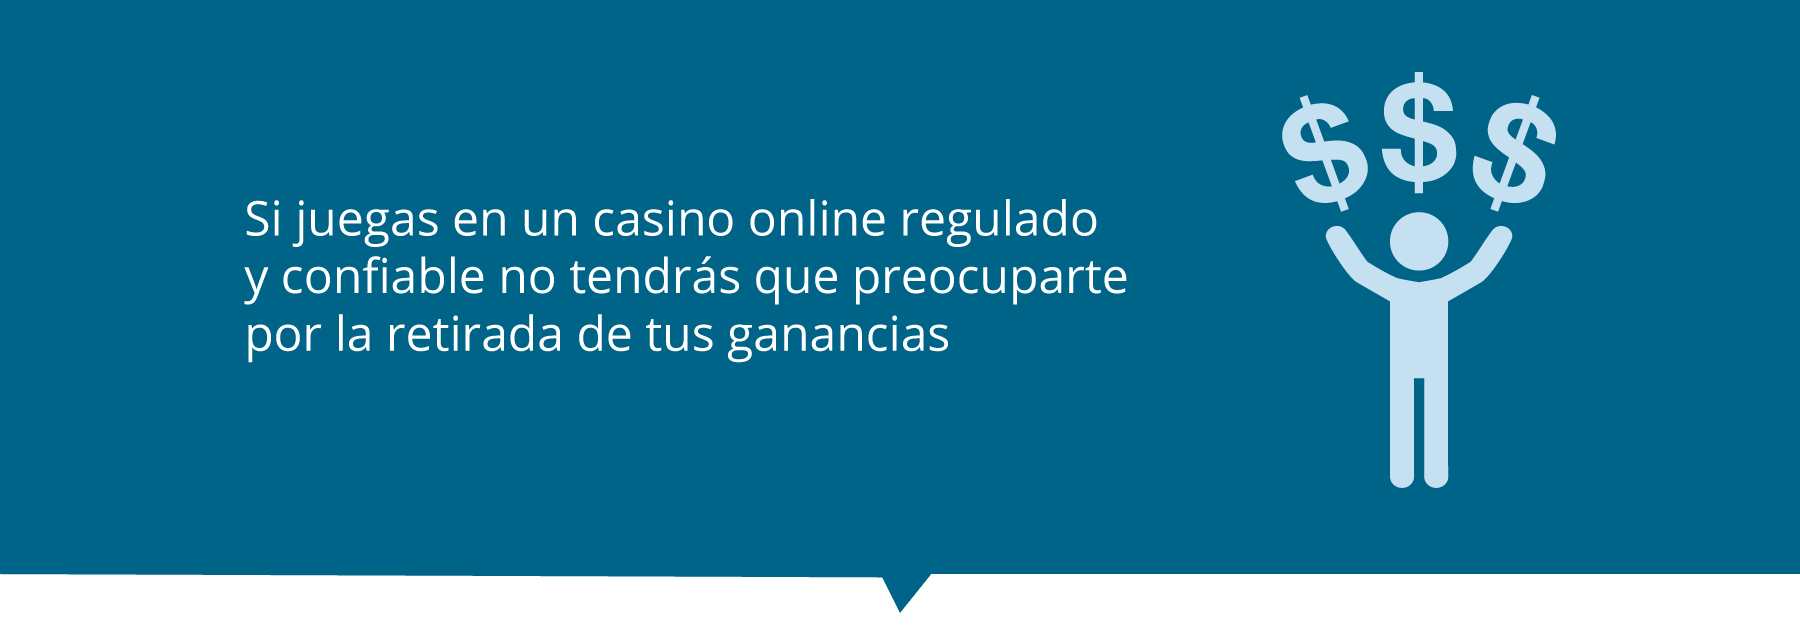 como retirar en los mejores casinos online en paraguay